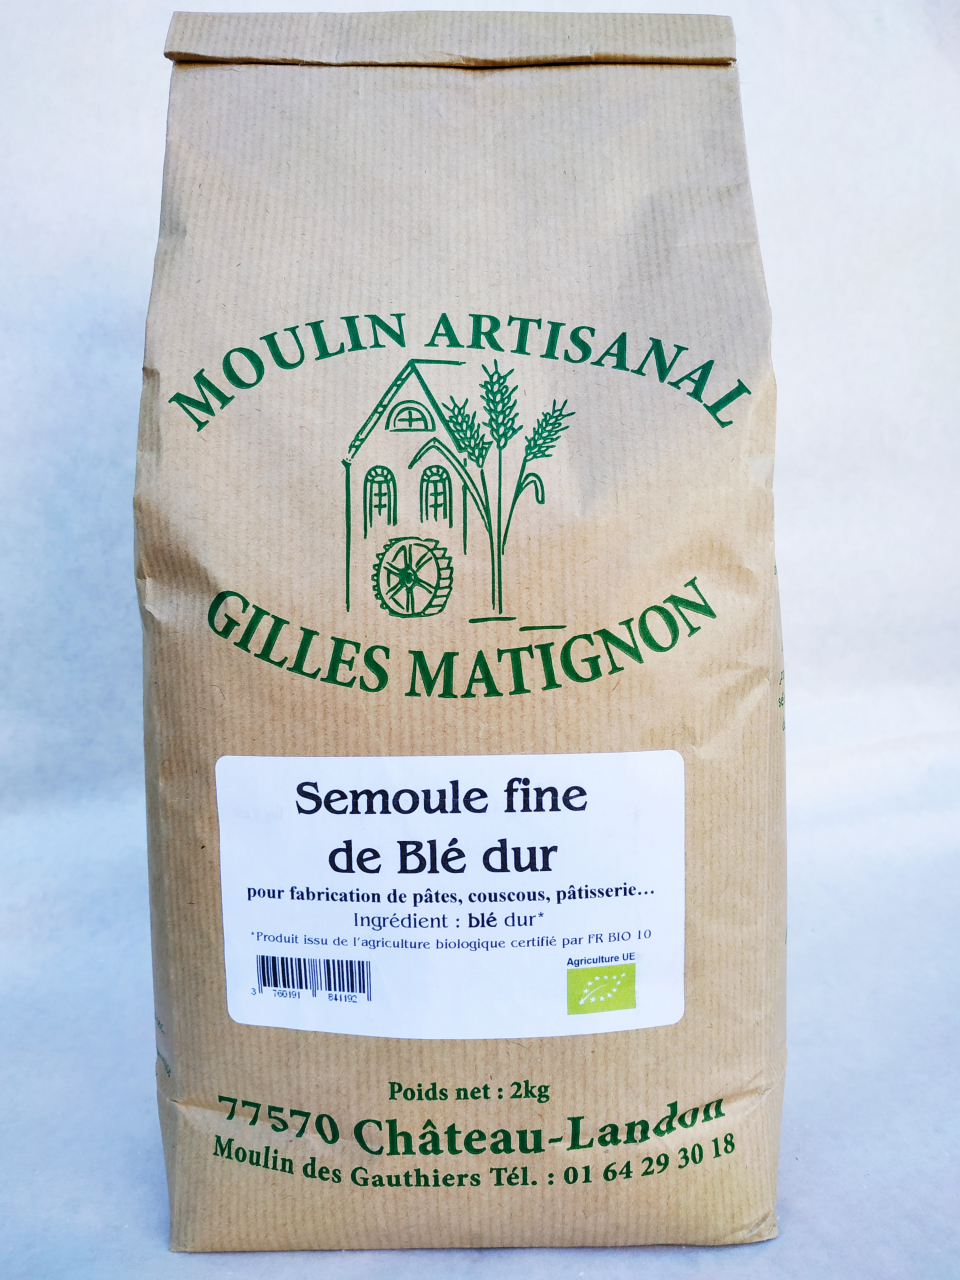 Semoule fine de blé dur bio par 5 kg - 5 kg - Moulin Artisanal Gilles  Matignon 